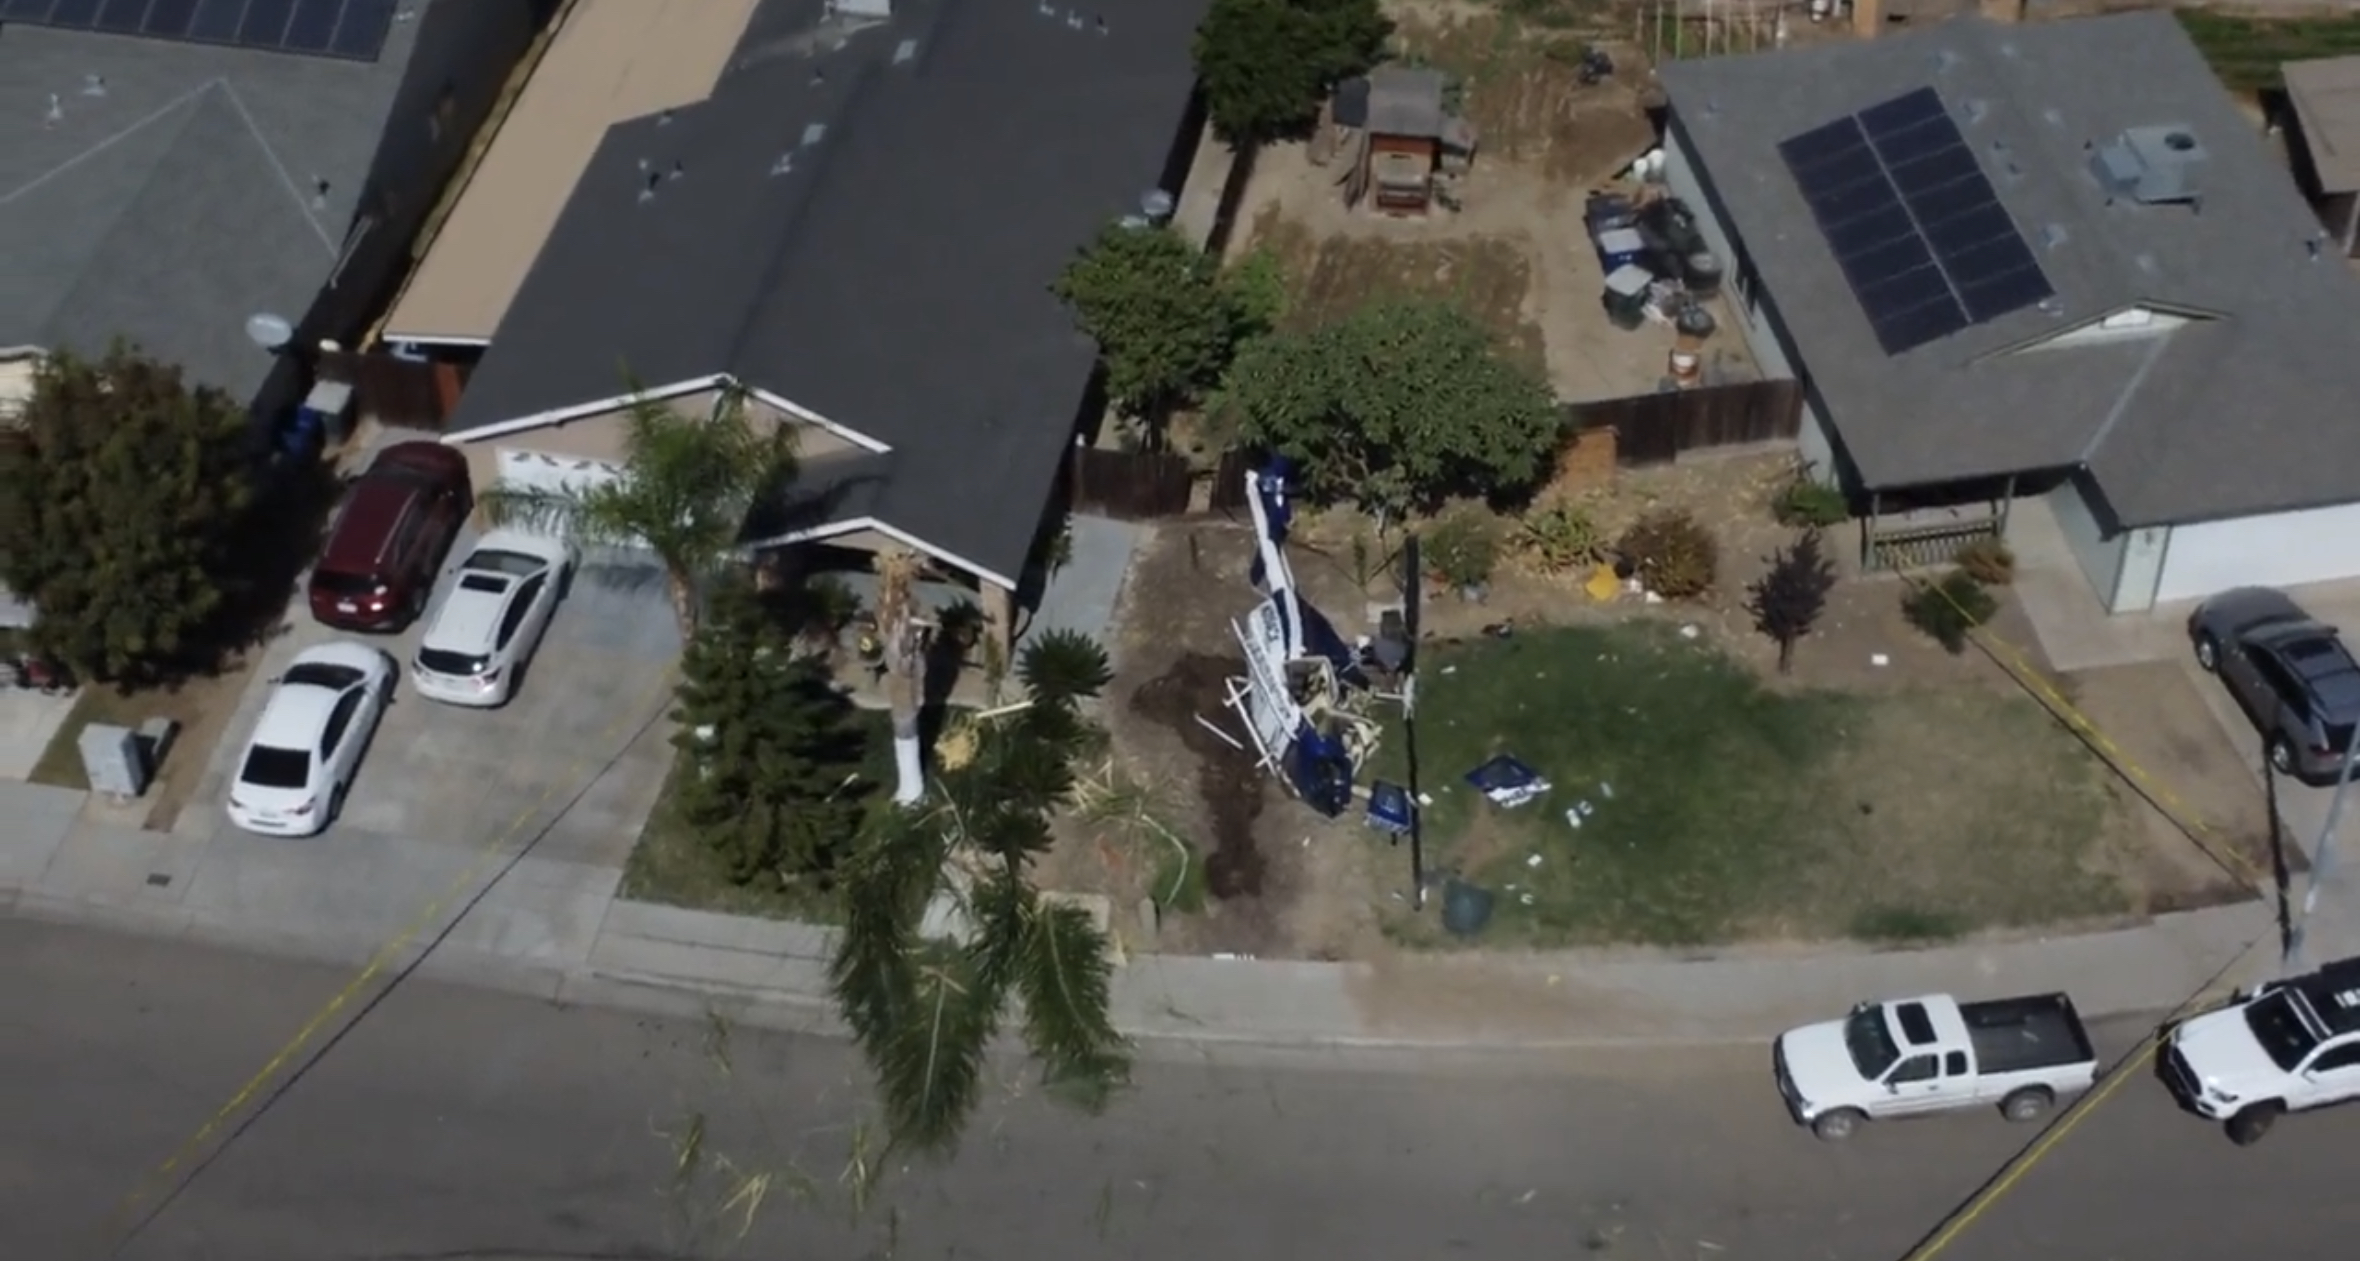 (VIDEO) Cae helicóptero en una casa en California